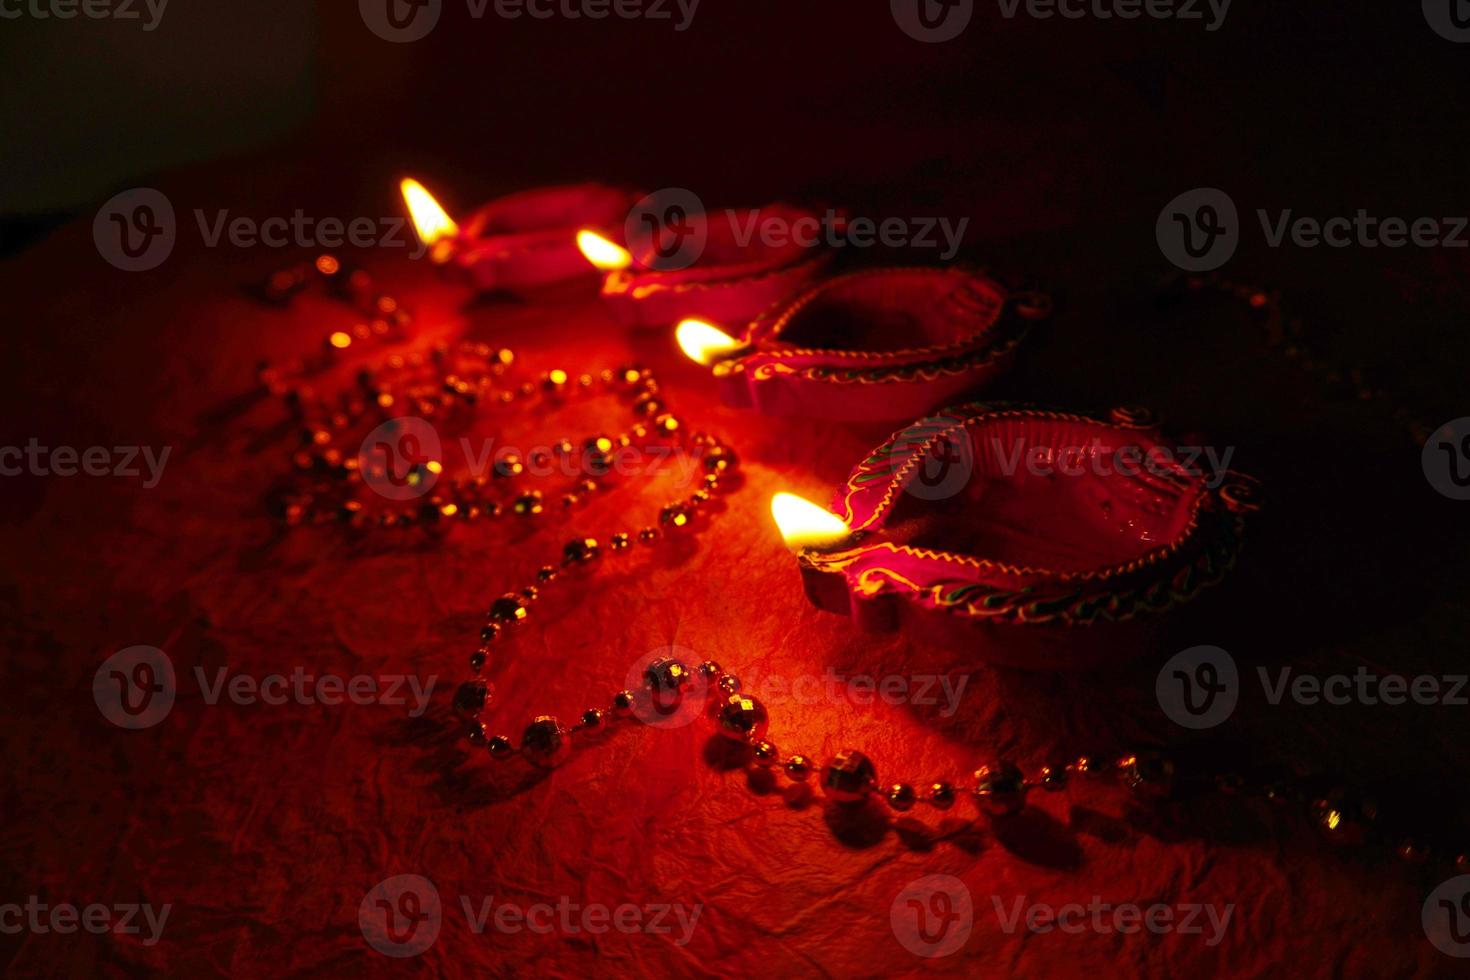 glad diwali - diya-lampor tänds under diwali-firandet. färgglada och dekorerade lyktor tänds på natten vid detta tillfälle med blomsterrangoli, godis och presenter. foto